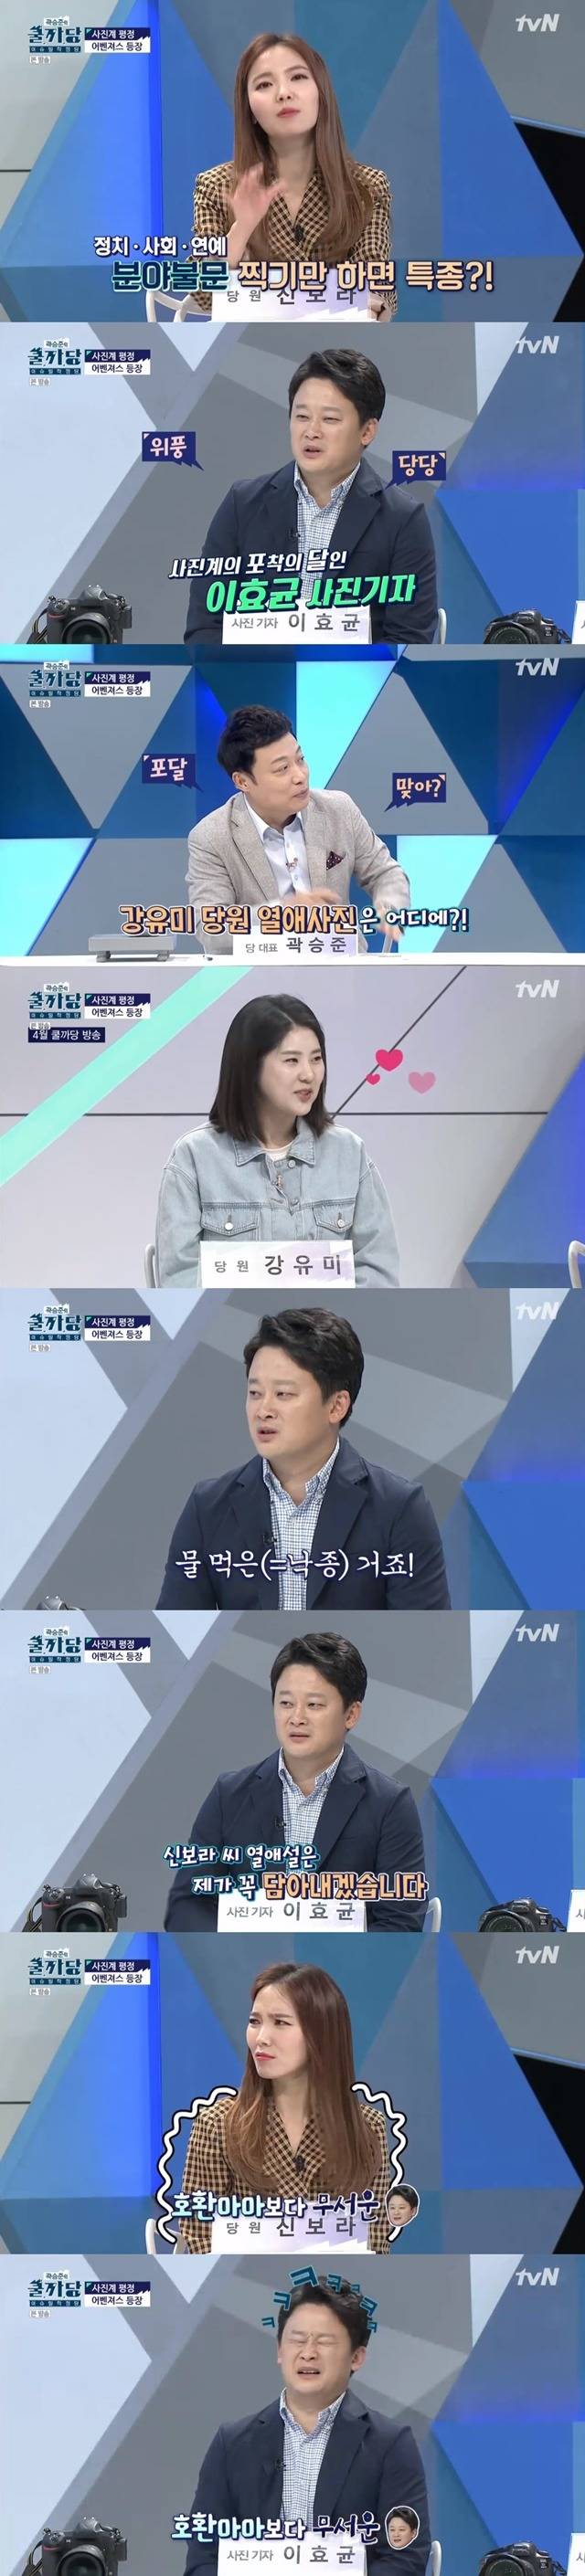 신보라의 열애를 꼭 제손으로 보도하겠다고 다짐한 이효균 사진기자. /tvN 방송캡처